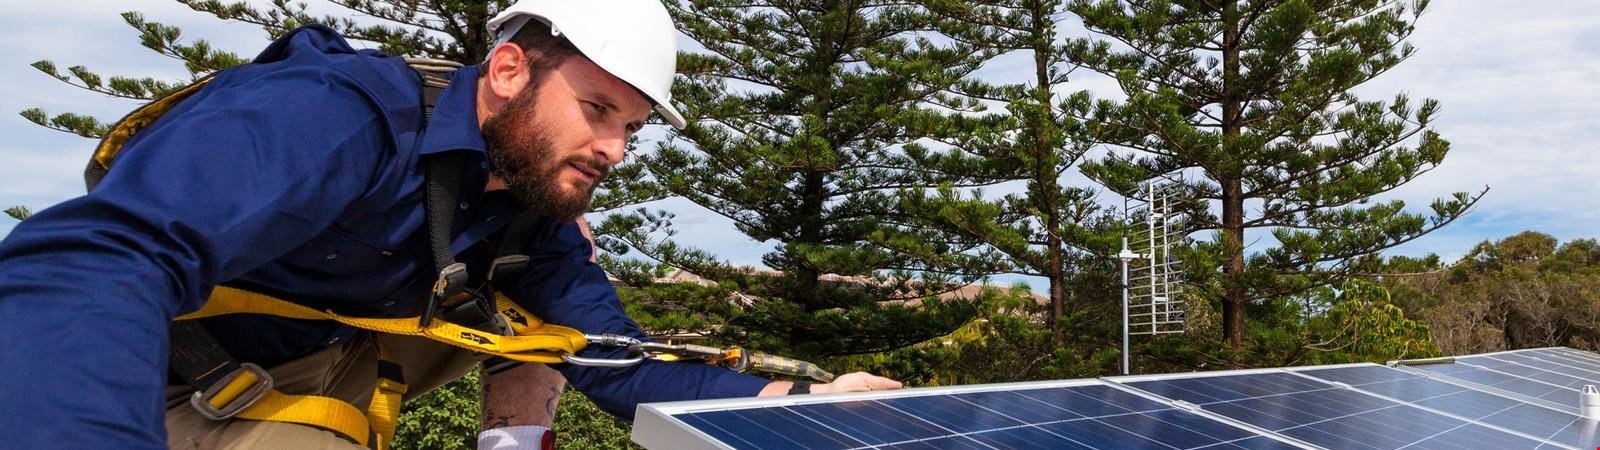 Ein Solarteur installiert eine Photovoltaikanlage.